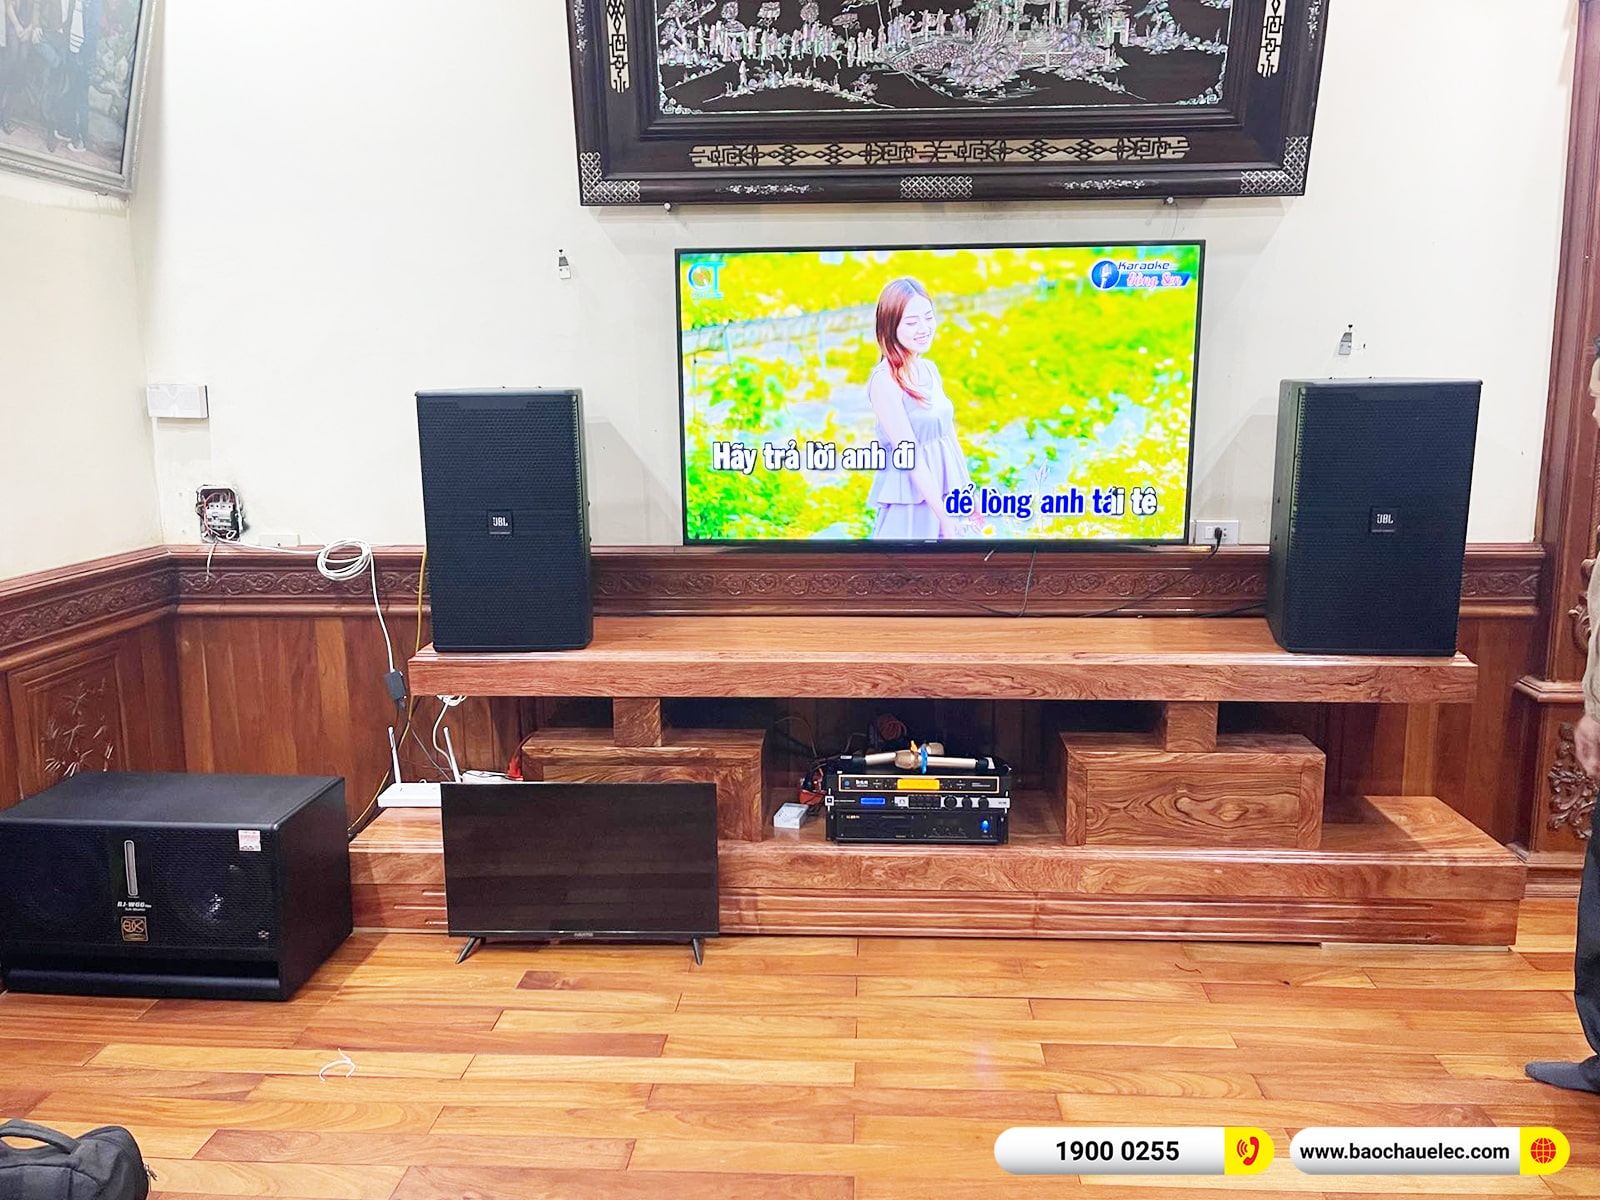 Lắp đặt dàn karaoke JBL hơn 70tr cho anh Minh tại Hà Nội (JBL KP4015 G2, VM830A, KX180A, W66 Plus, UGX12 Gold) 